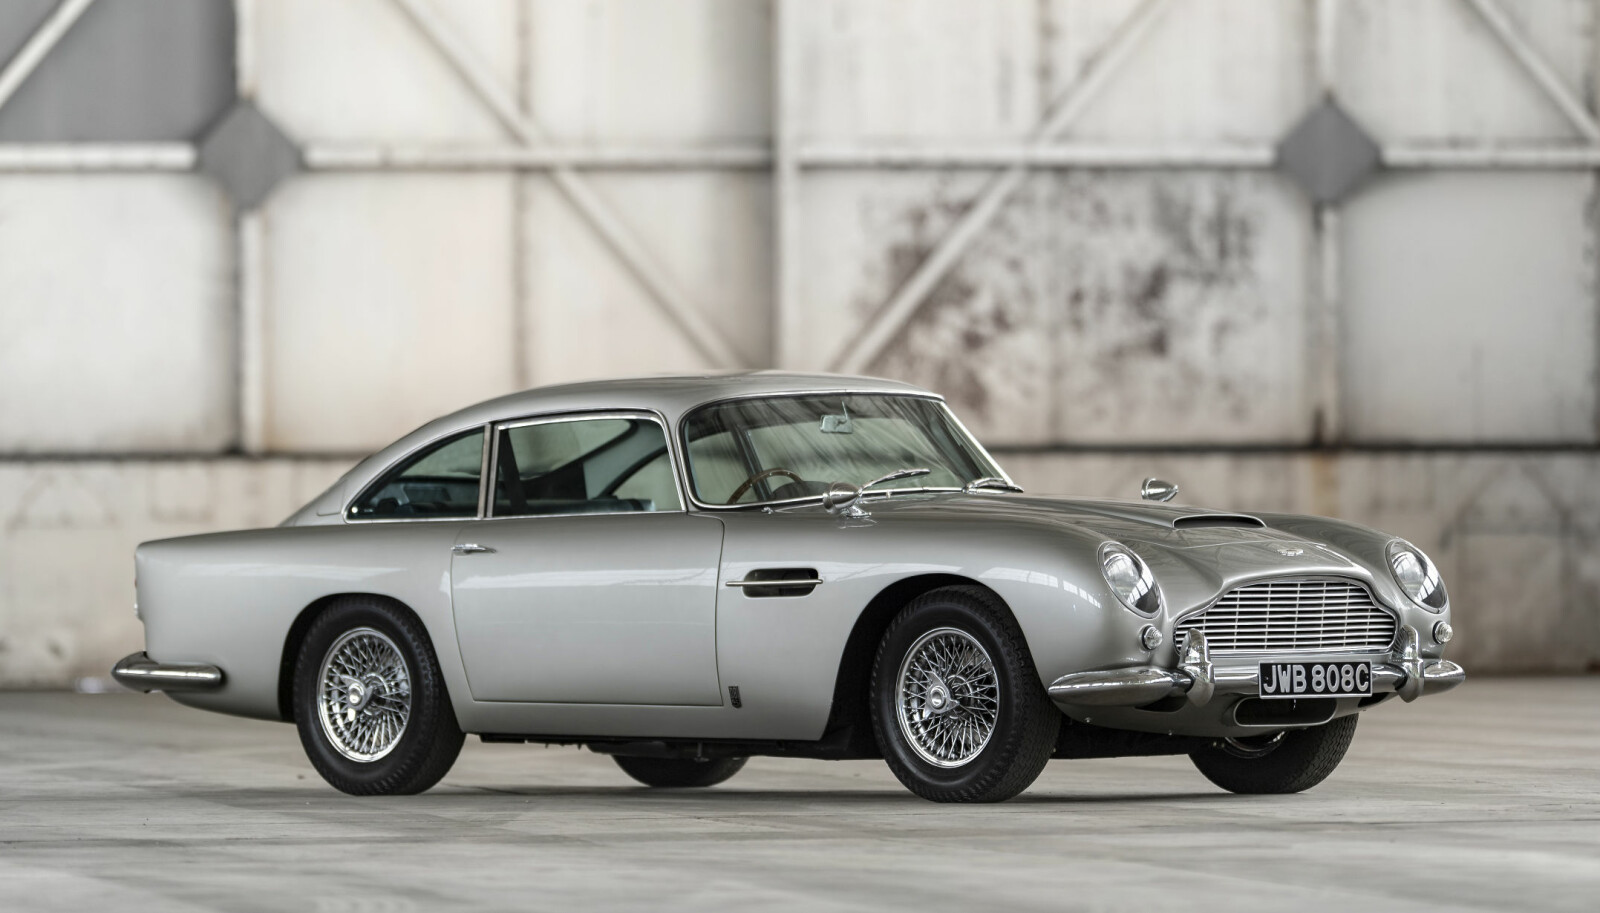 <b>BYGGER NYE:</b> Nå bygger Aston Martin 25 reproduksjoner av Bond-bilen for salg.